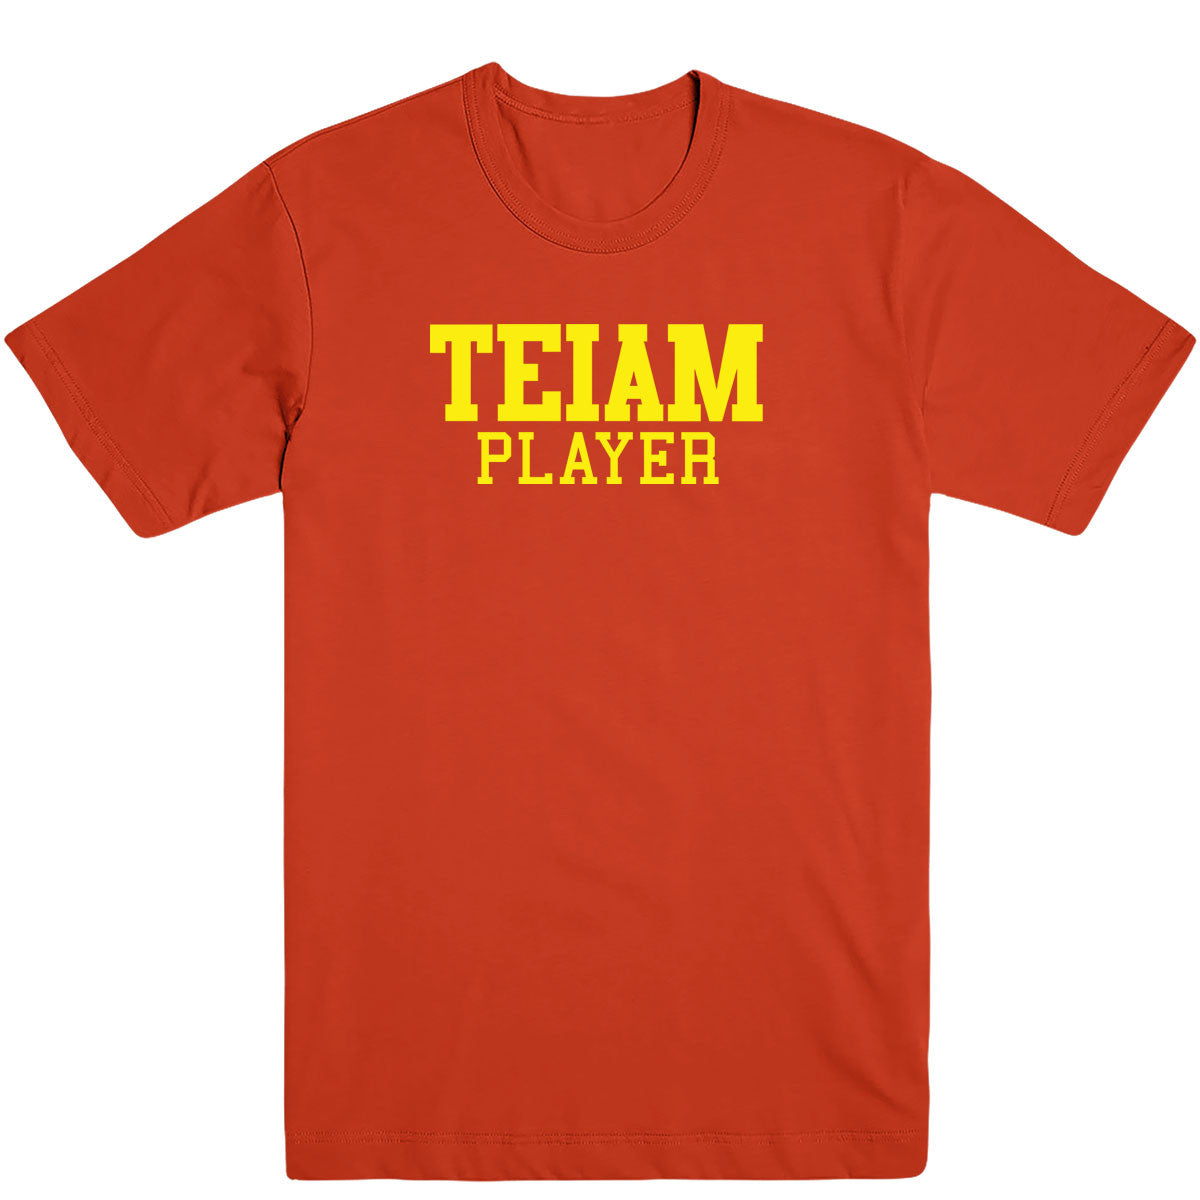 Teiam Player Men's Tee - deezteez.com